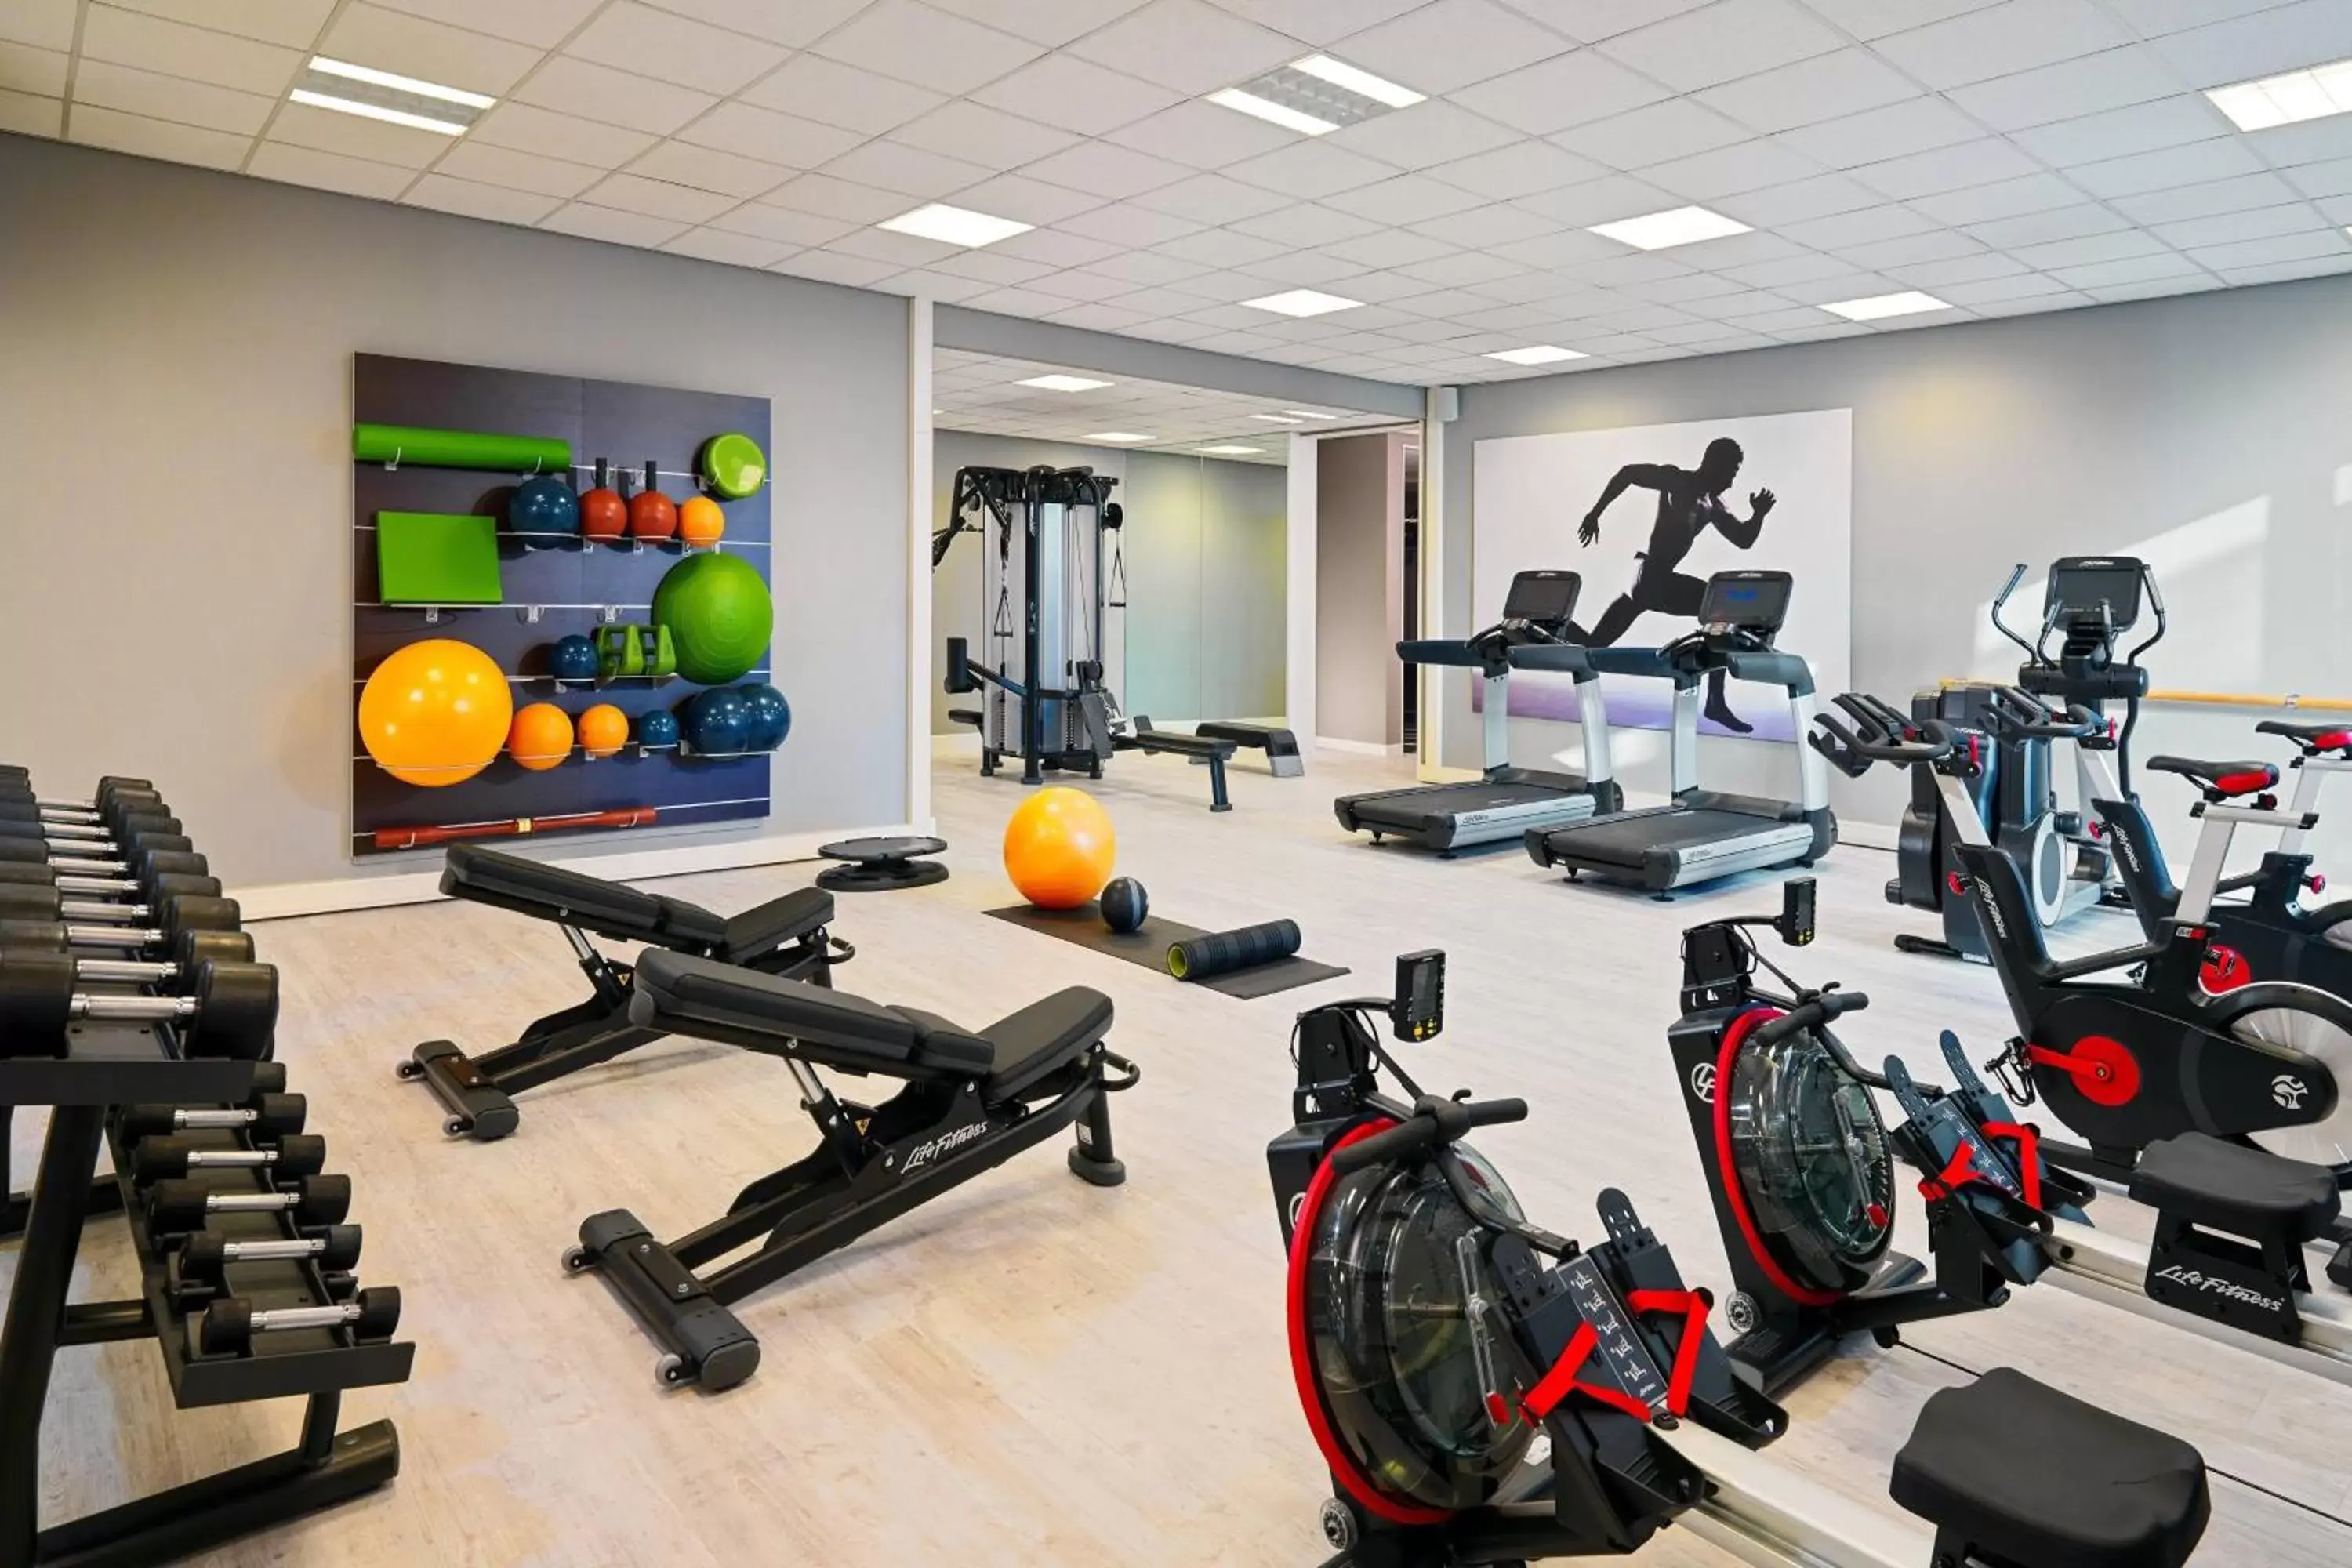 Fitness centre/facilities, Fitness Center/Facilities in Rotterdam Marriott Hotel